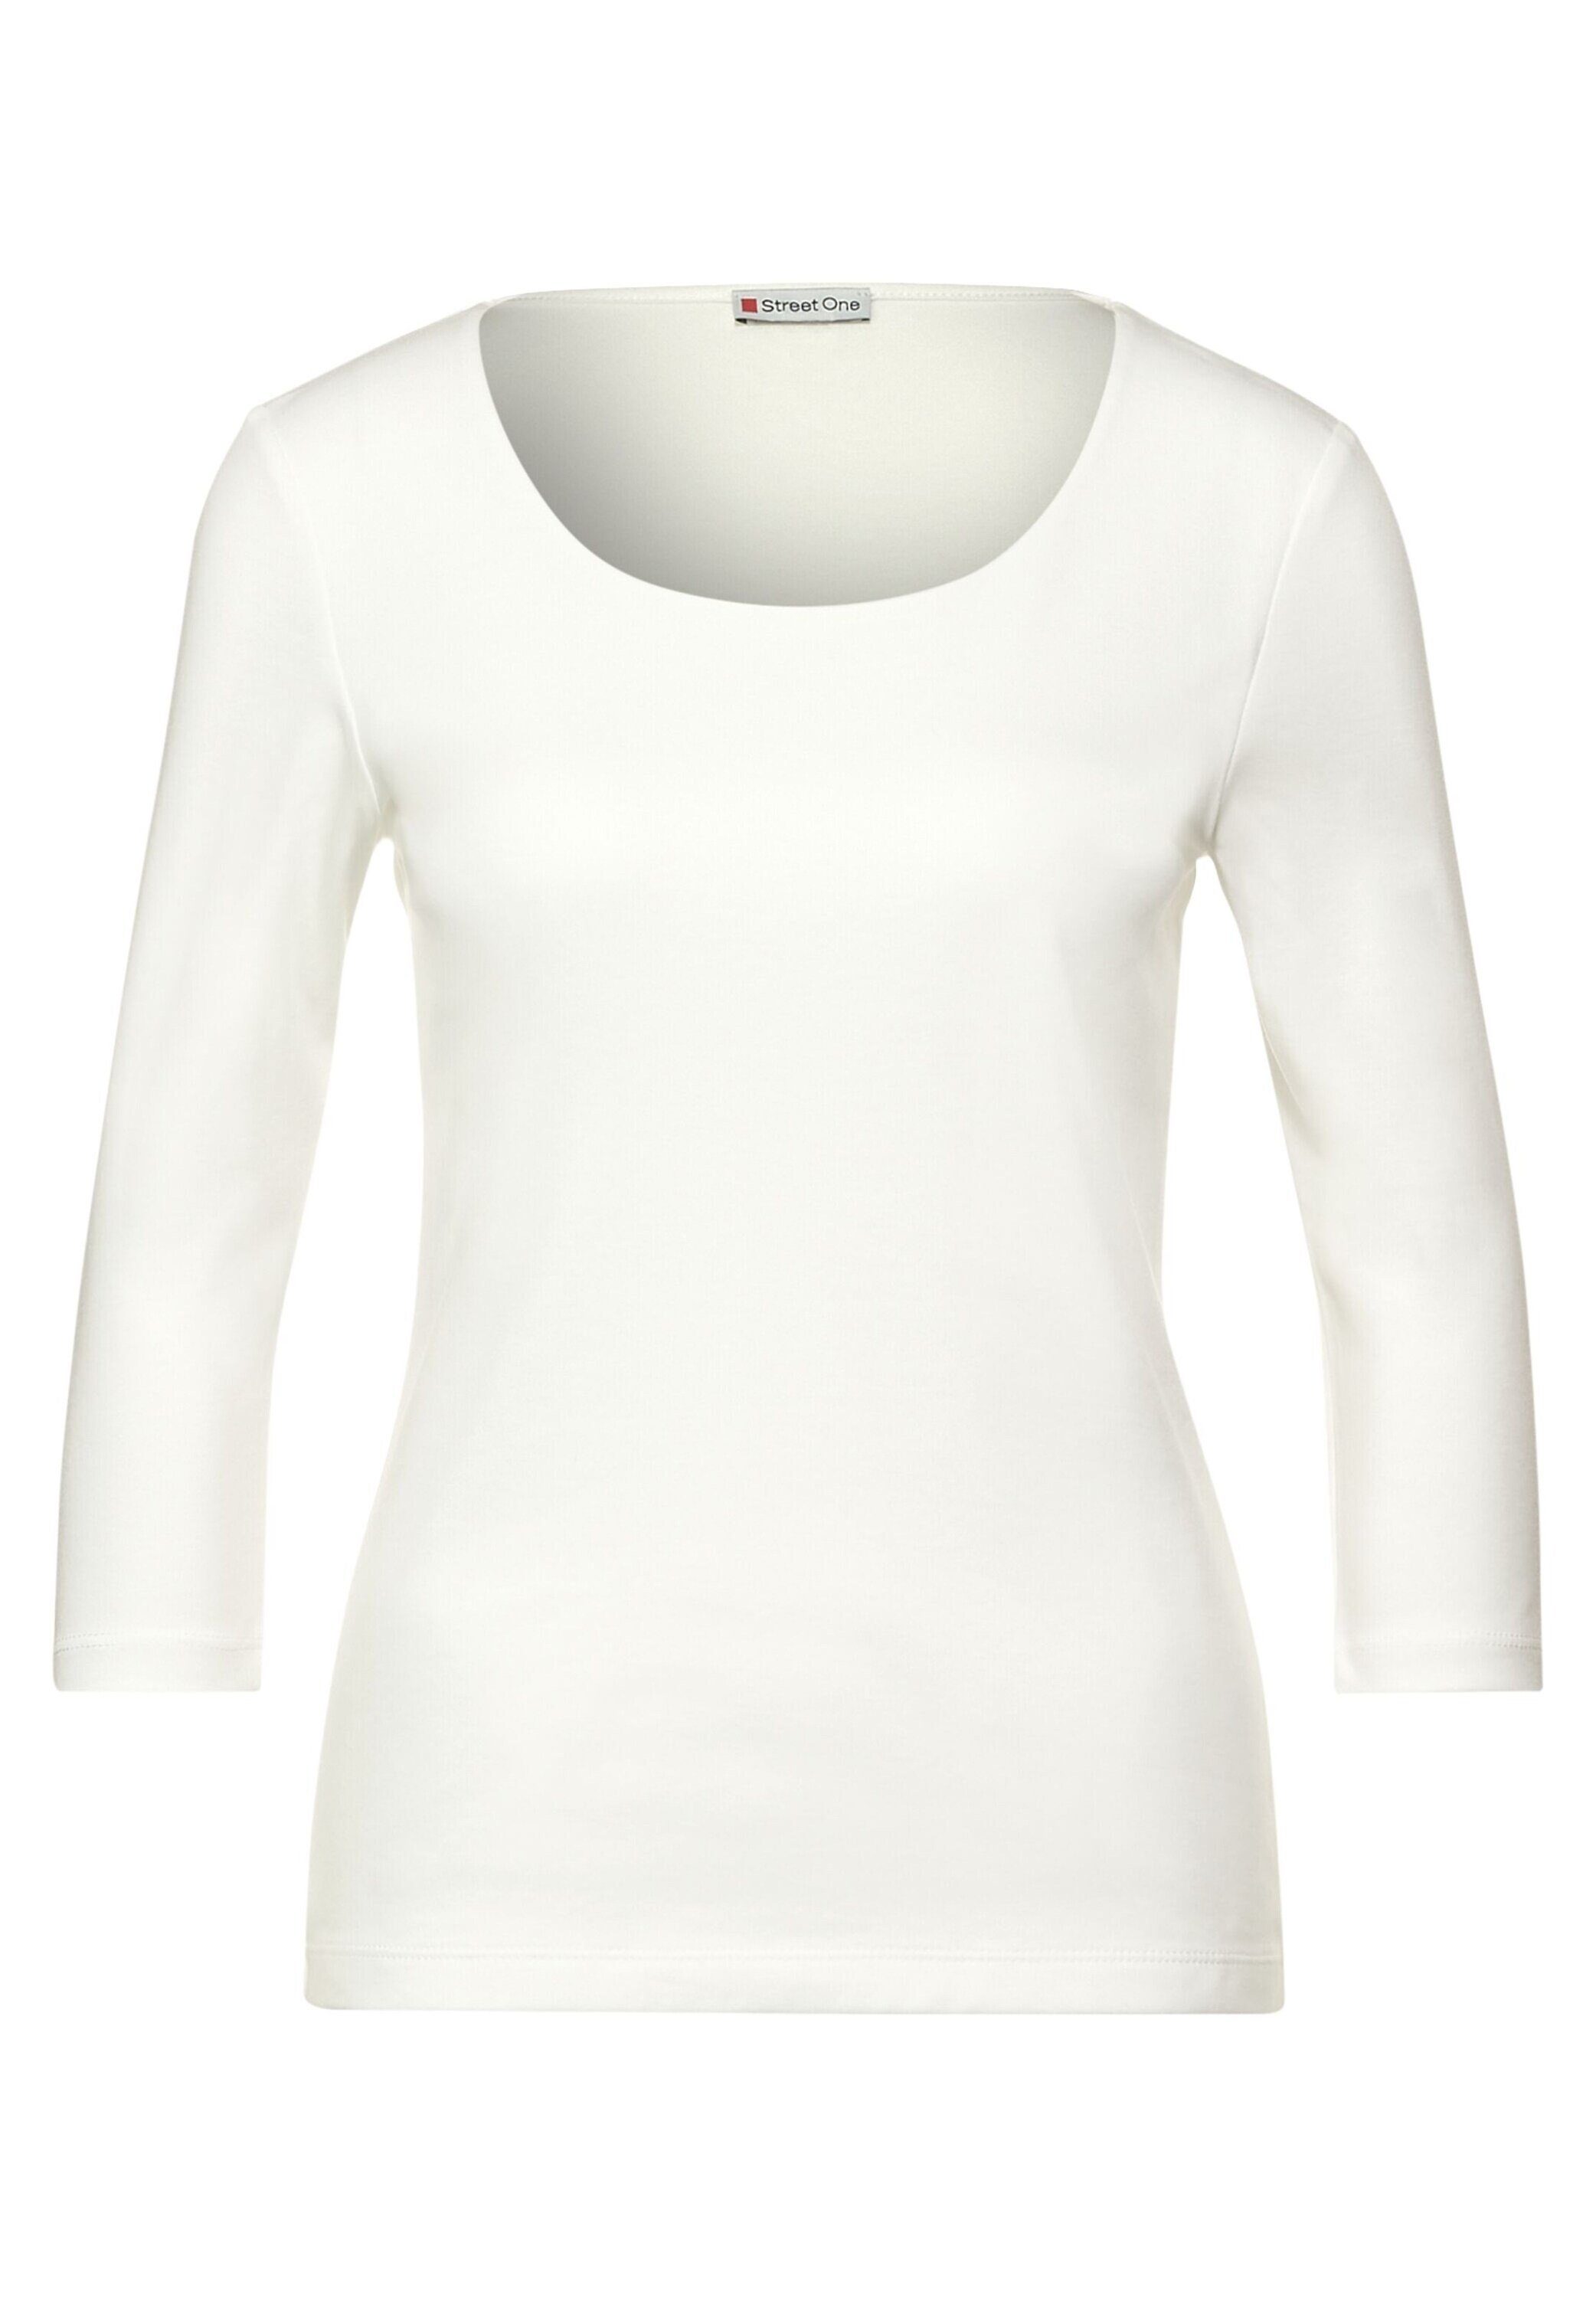 OTTO kaufen Damen online One | Street für Shirts Weiße